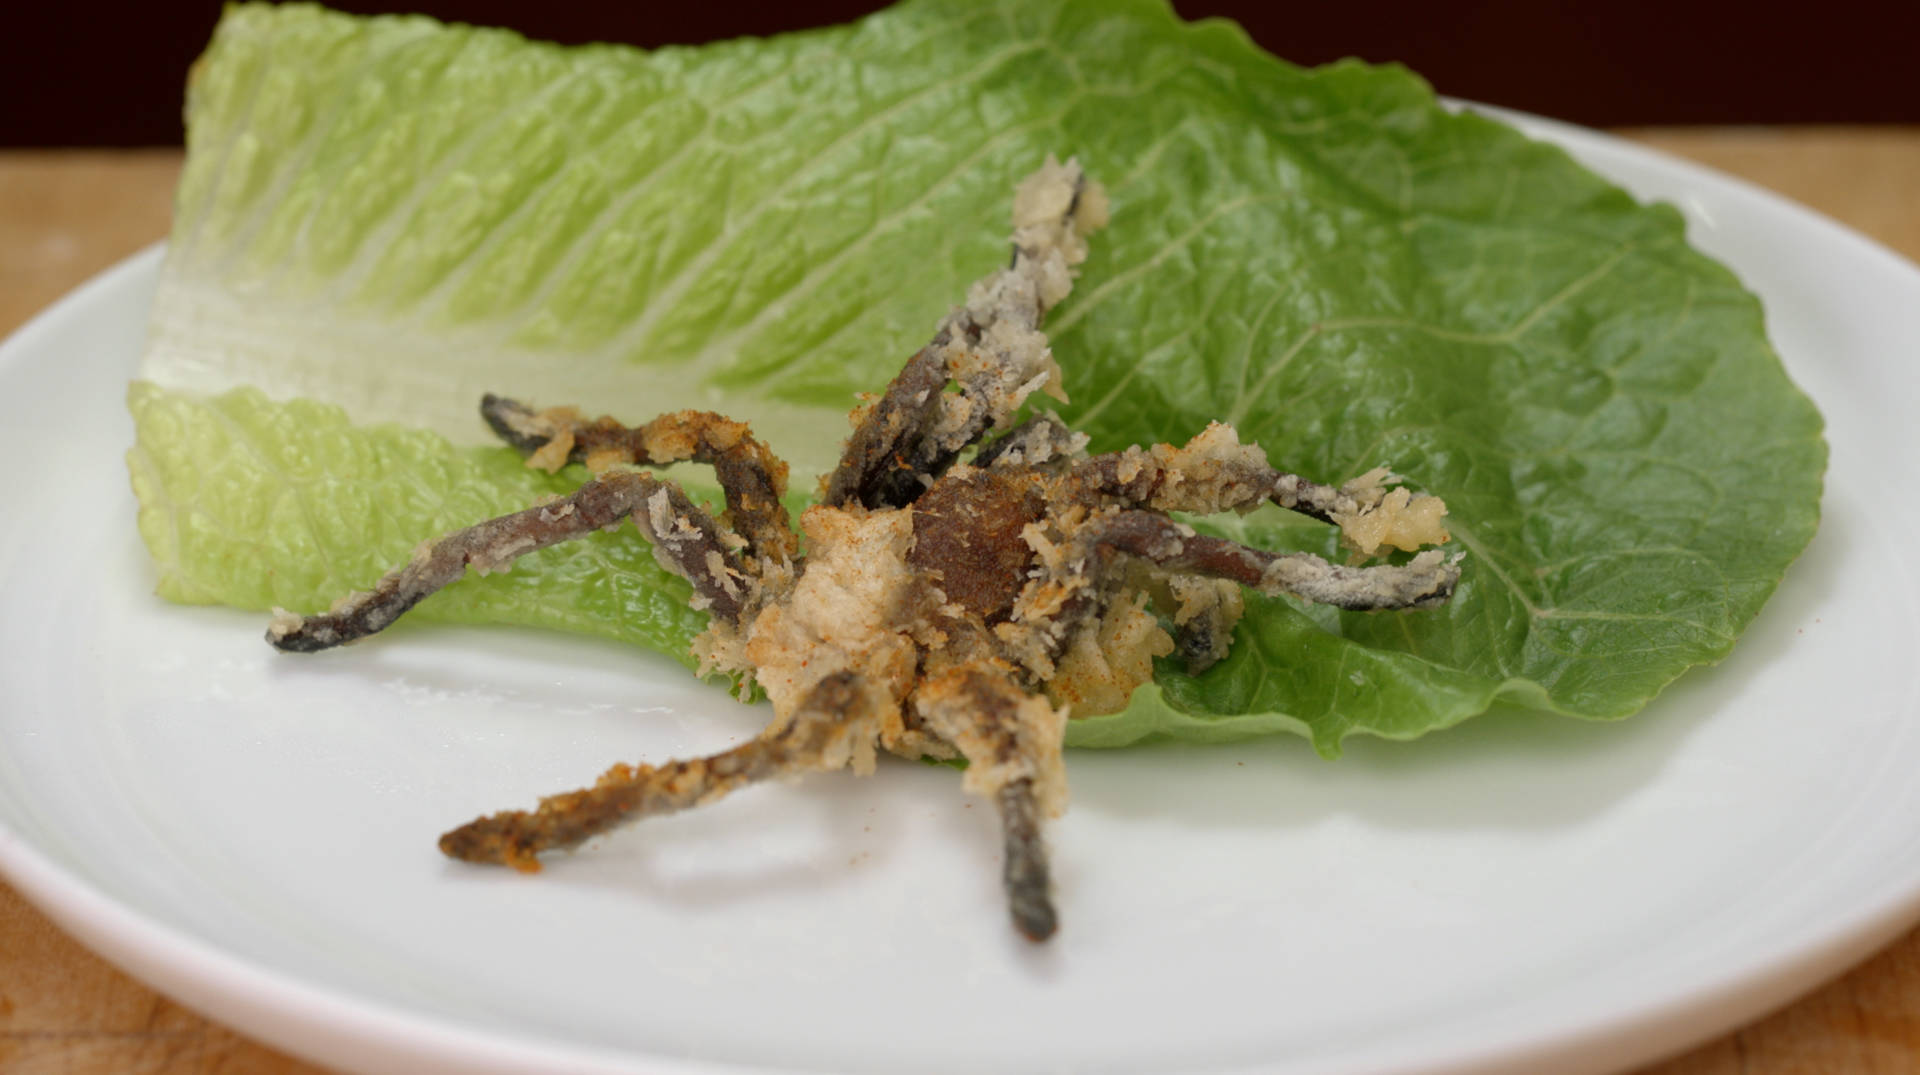 Deep-fried tarantula. Hungry yet?